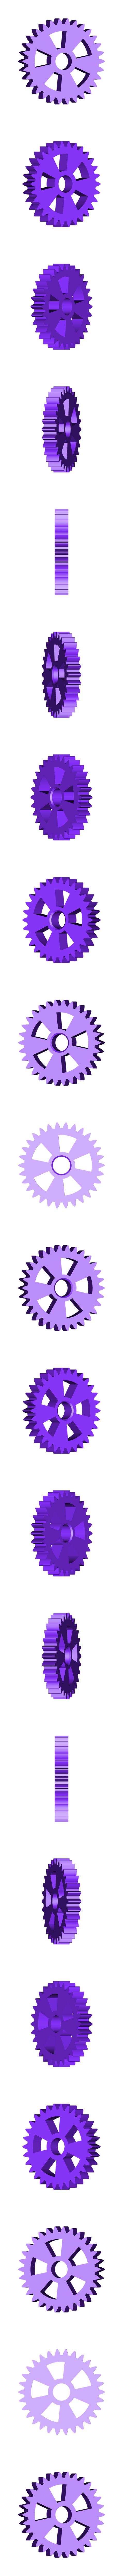 gear_big.stl Download free STL file 775 motor gear • 3D printer template, NikodemBartnik